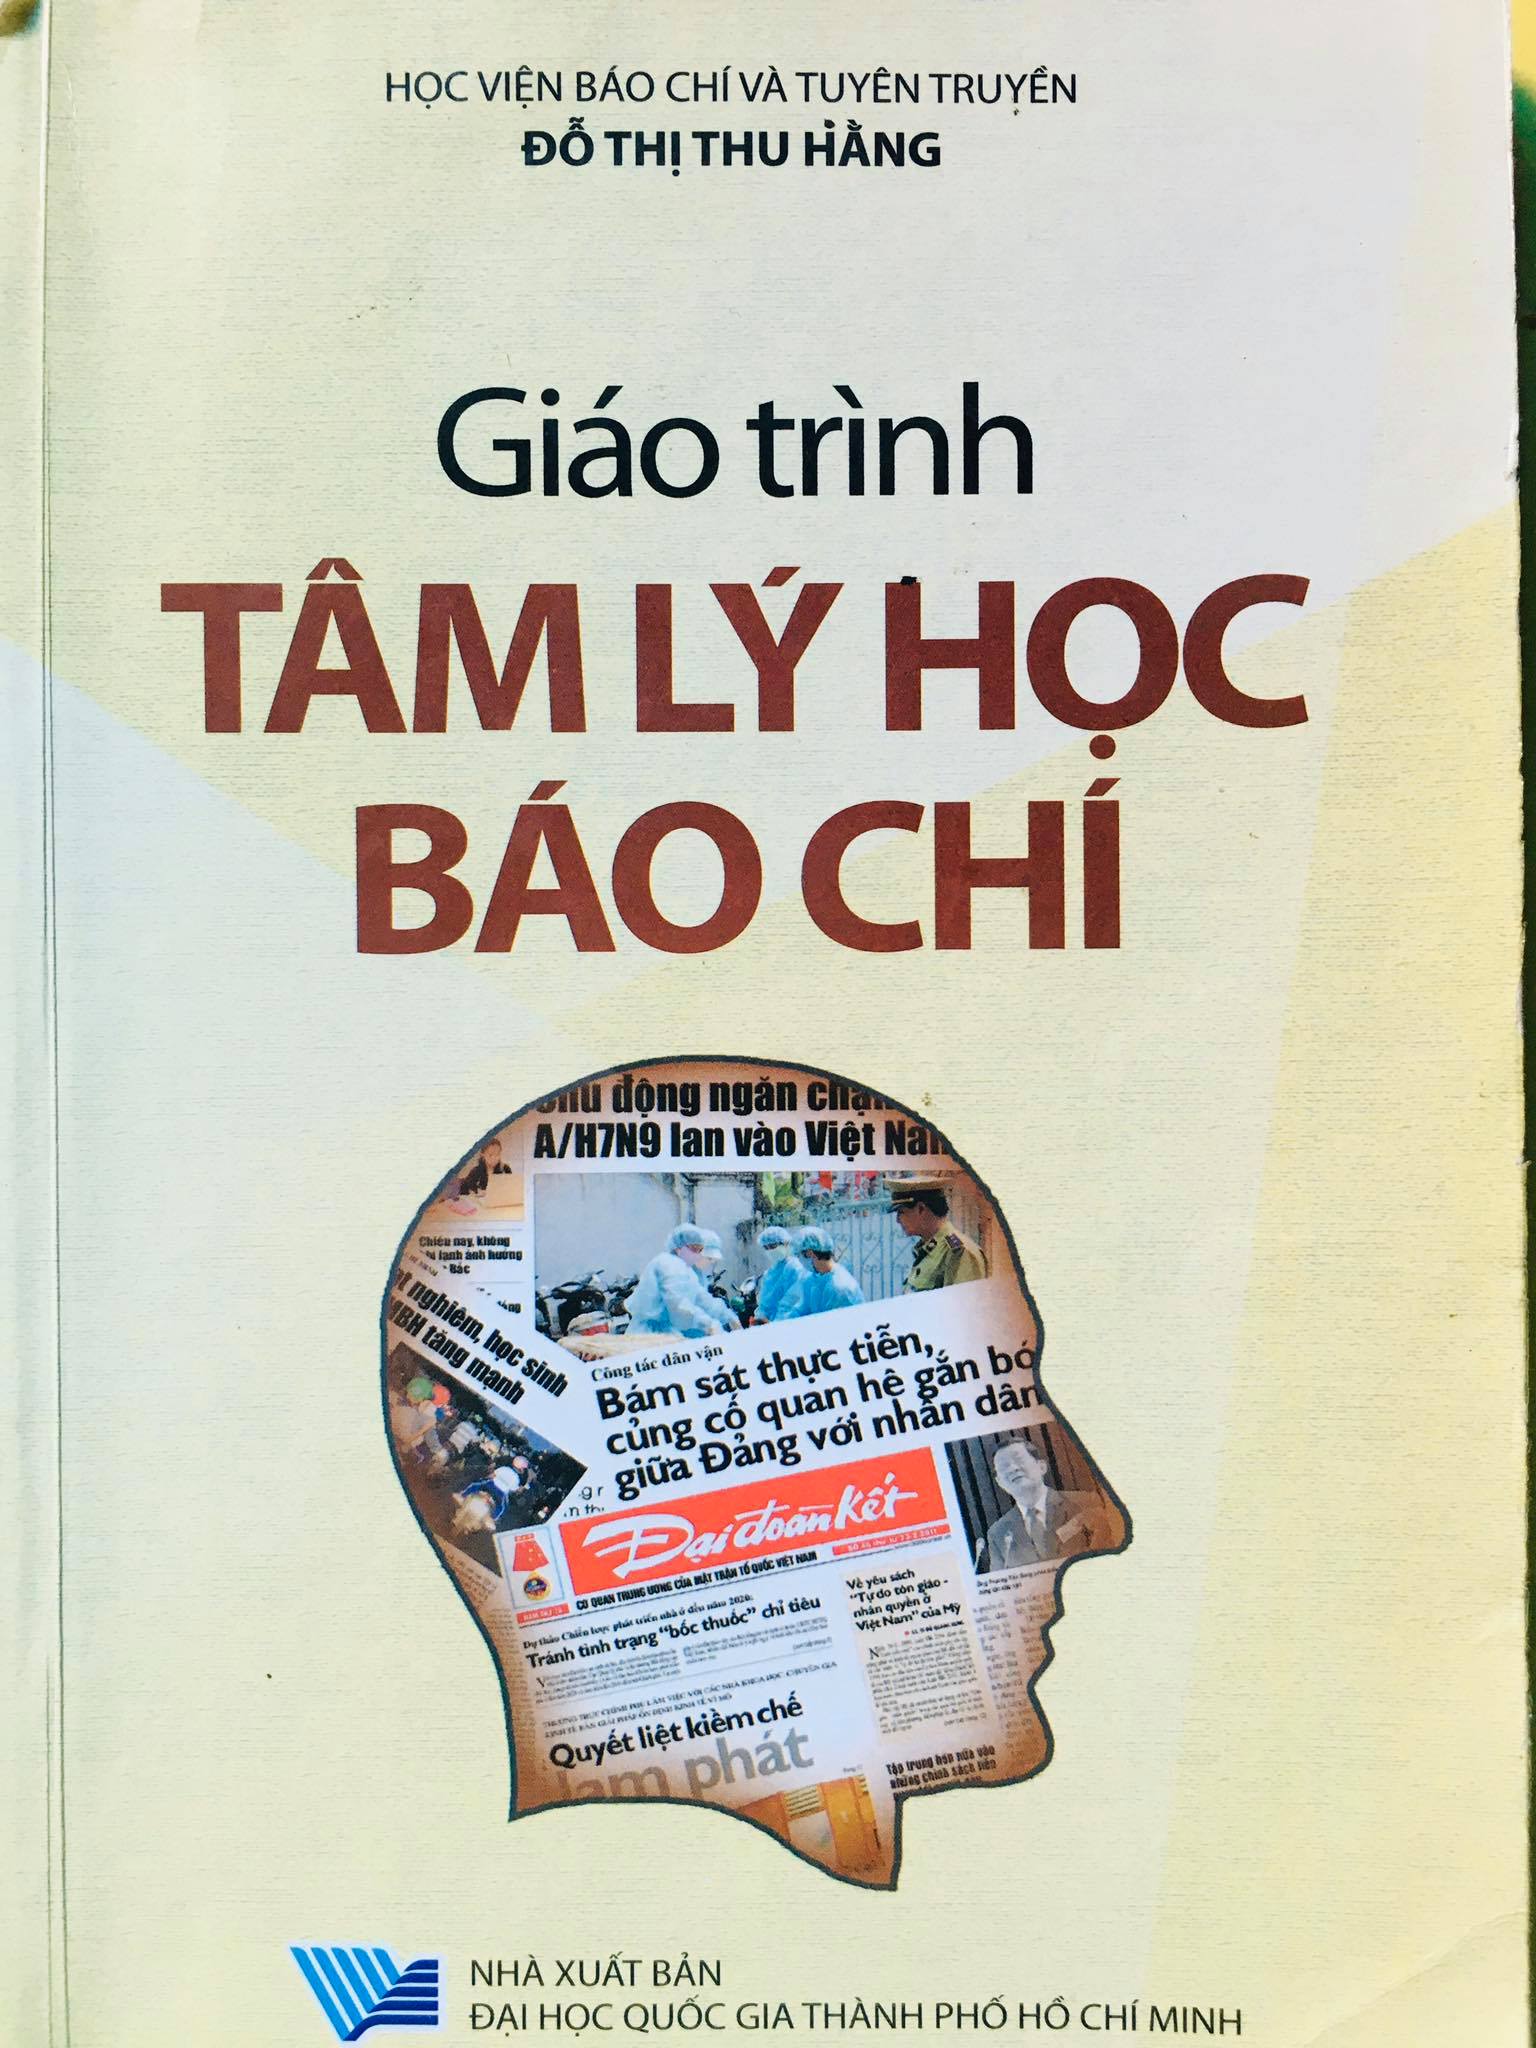 PGS,TS Đỗ Thị Thu Hằng: "Sinh viên báo chí cần học cách thấu hiểu công chúng."